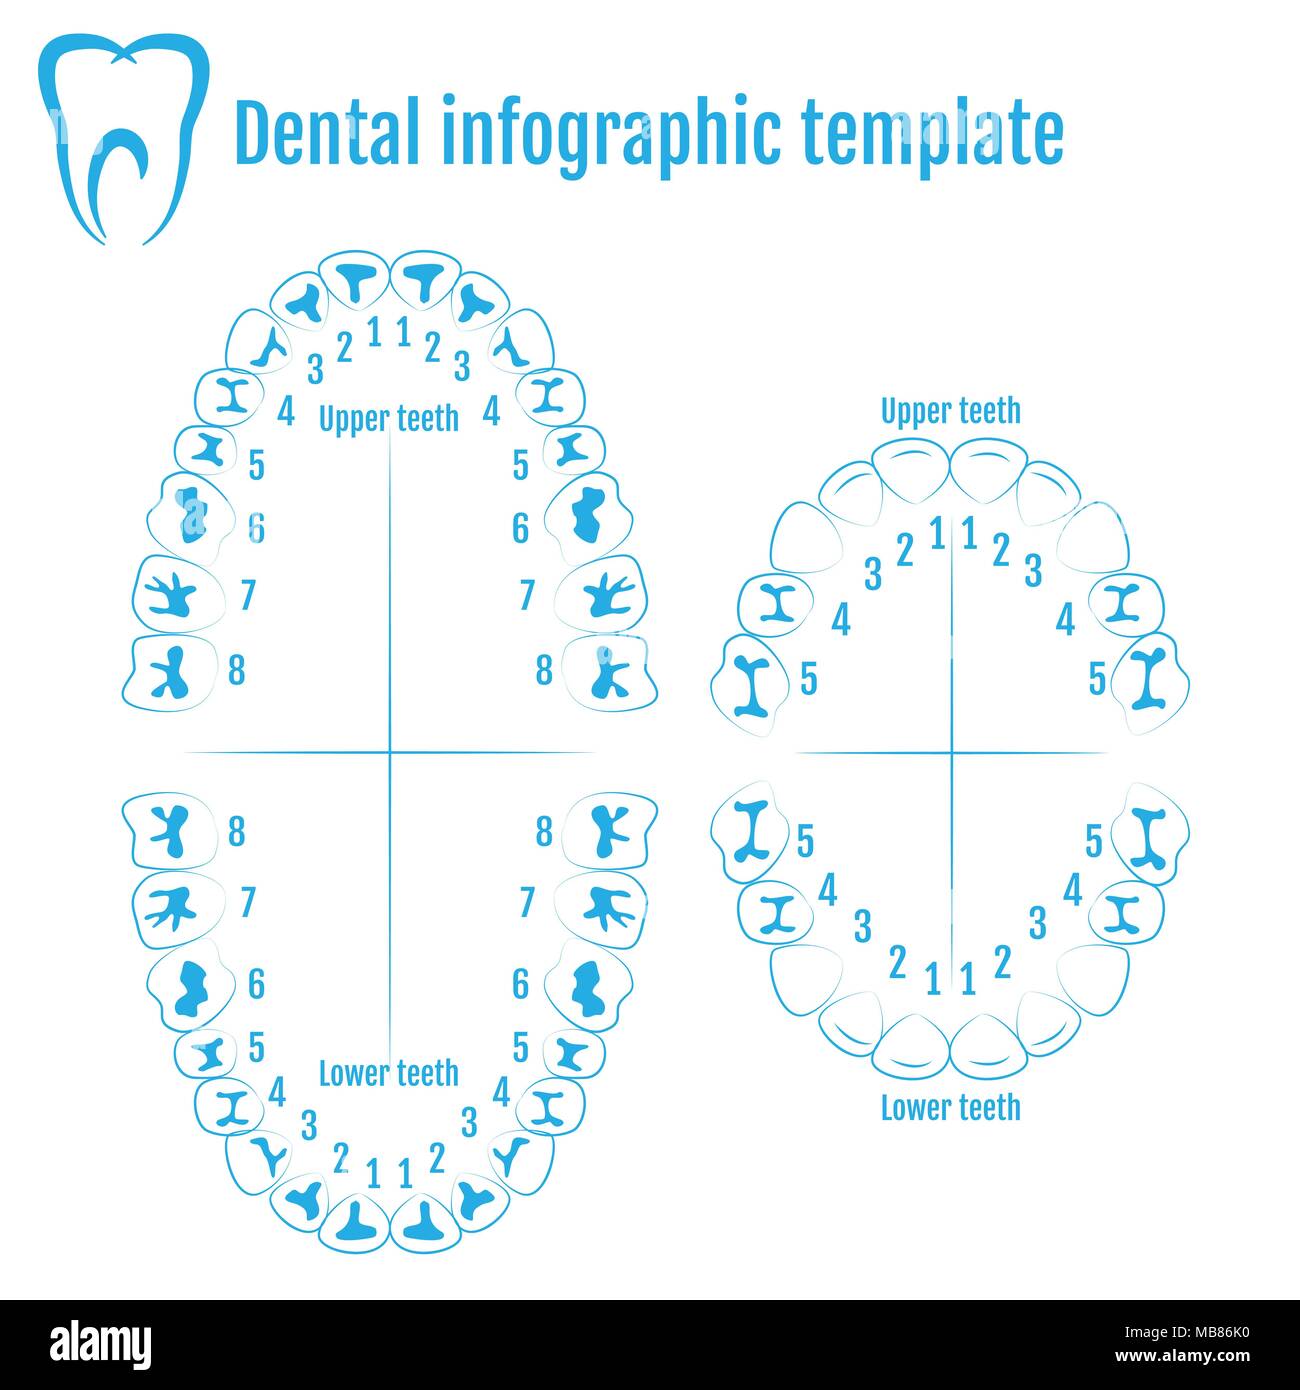 Les droits de l'orthodontiste l'anatomie des dents vecteur avec numérotation des dents d'un adulte et un enfant. Medical Dental infographic template Illustration de Vecteur